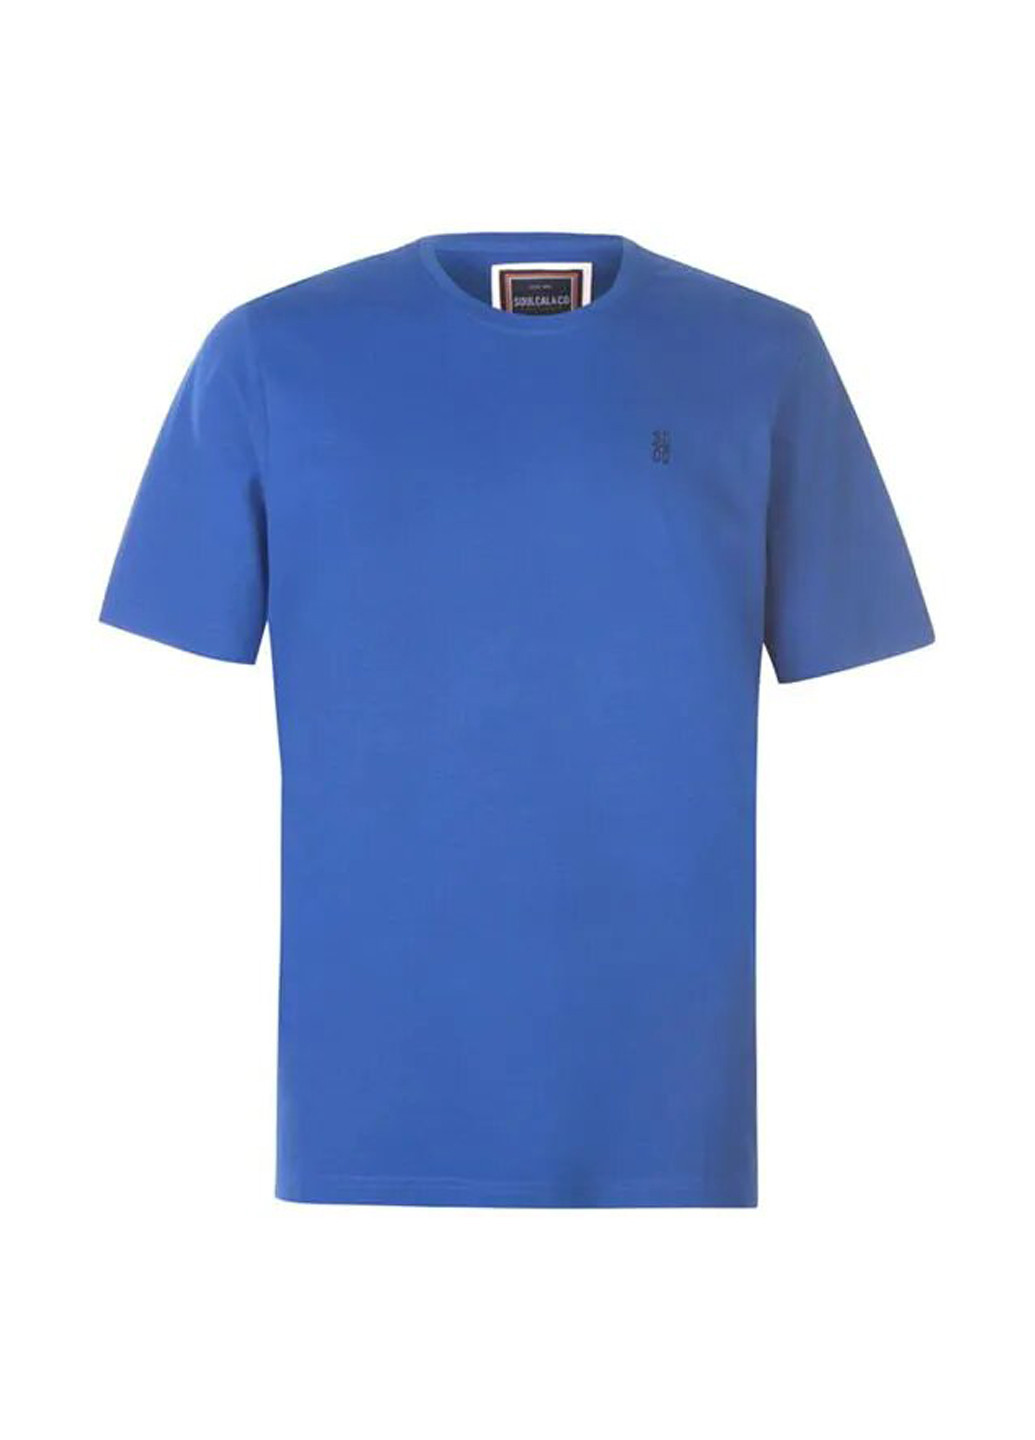 Синяя футболка Soulcal & Co